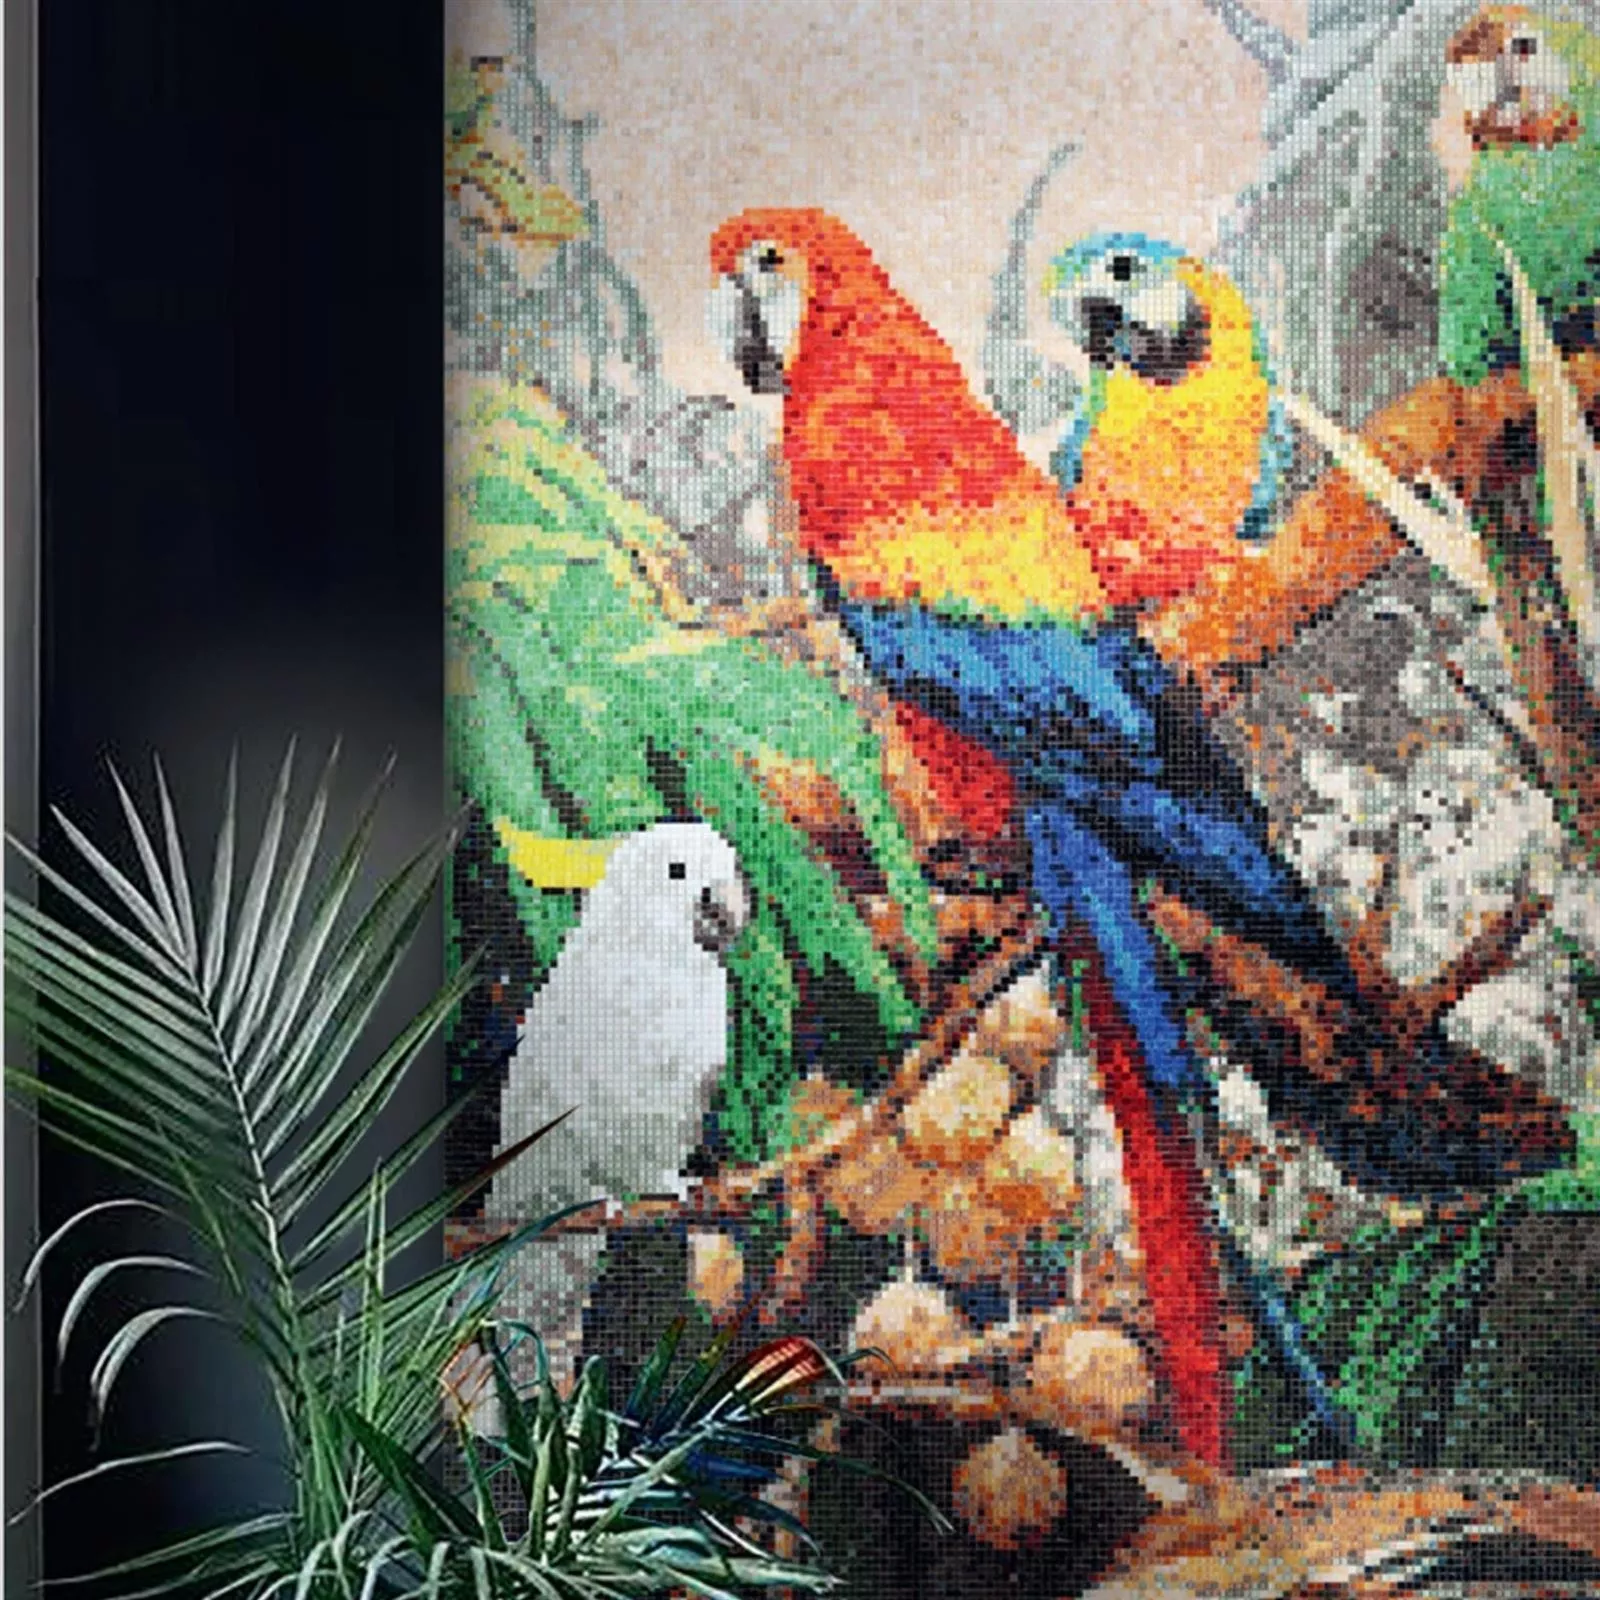 Mozaik Staklo Slika Parrots 130x240cm